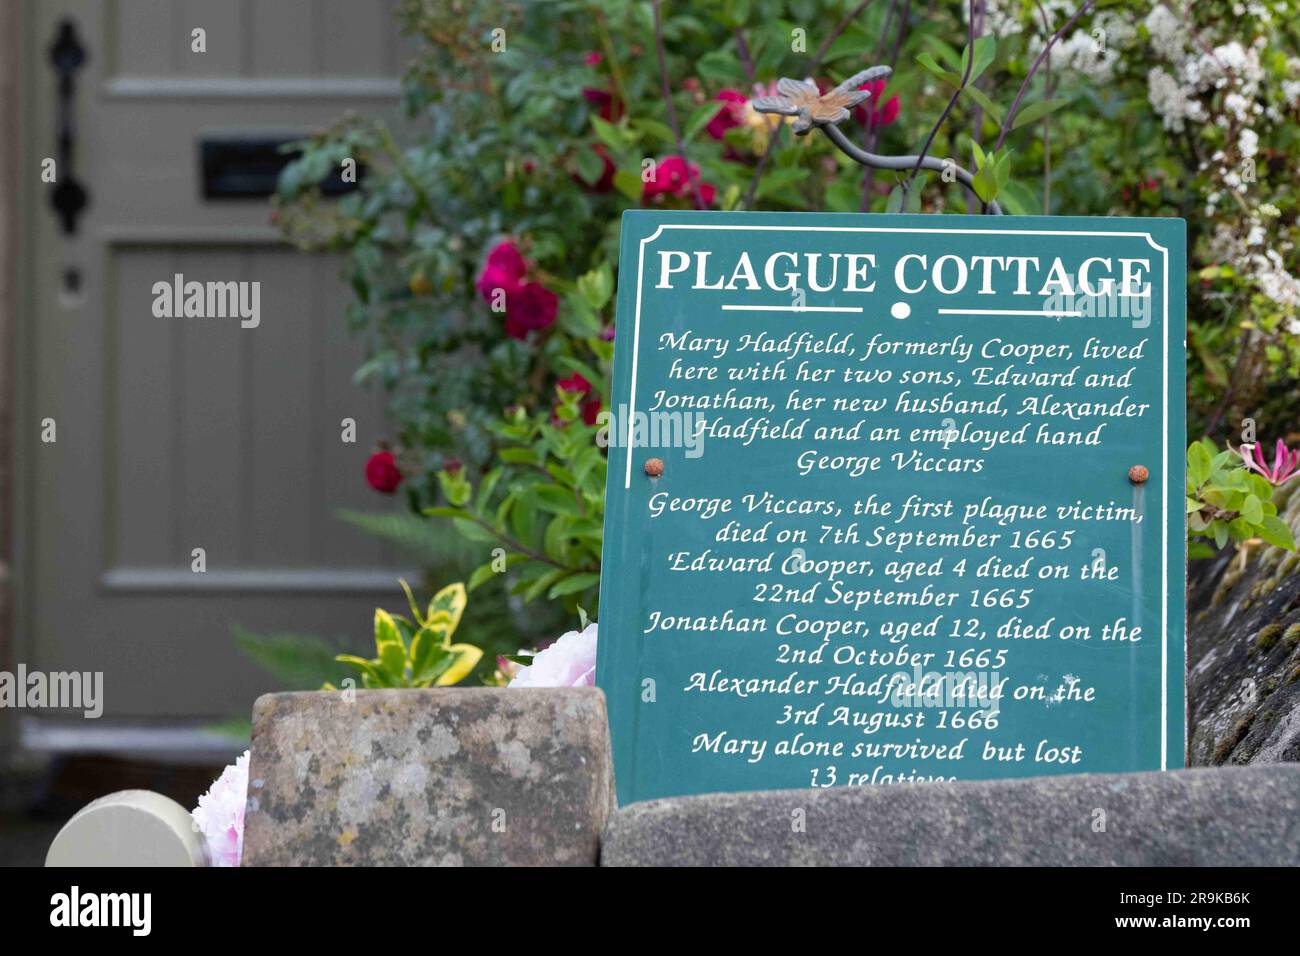 Plague Cottage, Eyam, Derbyshire, England, UK Stock Photo